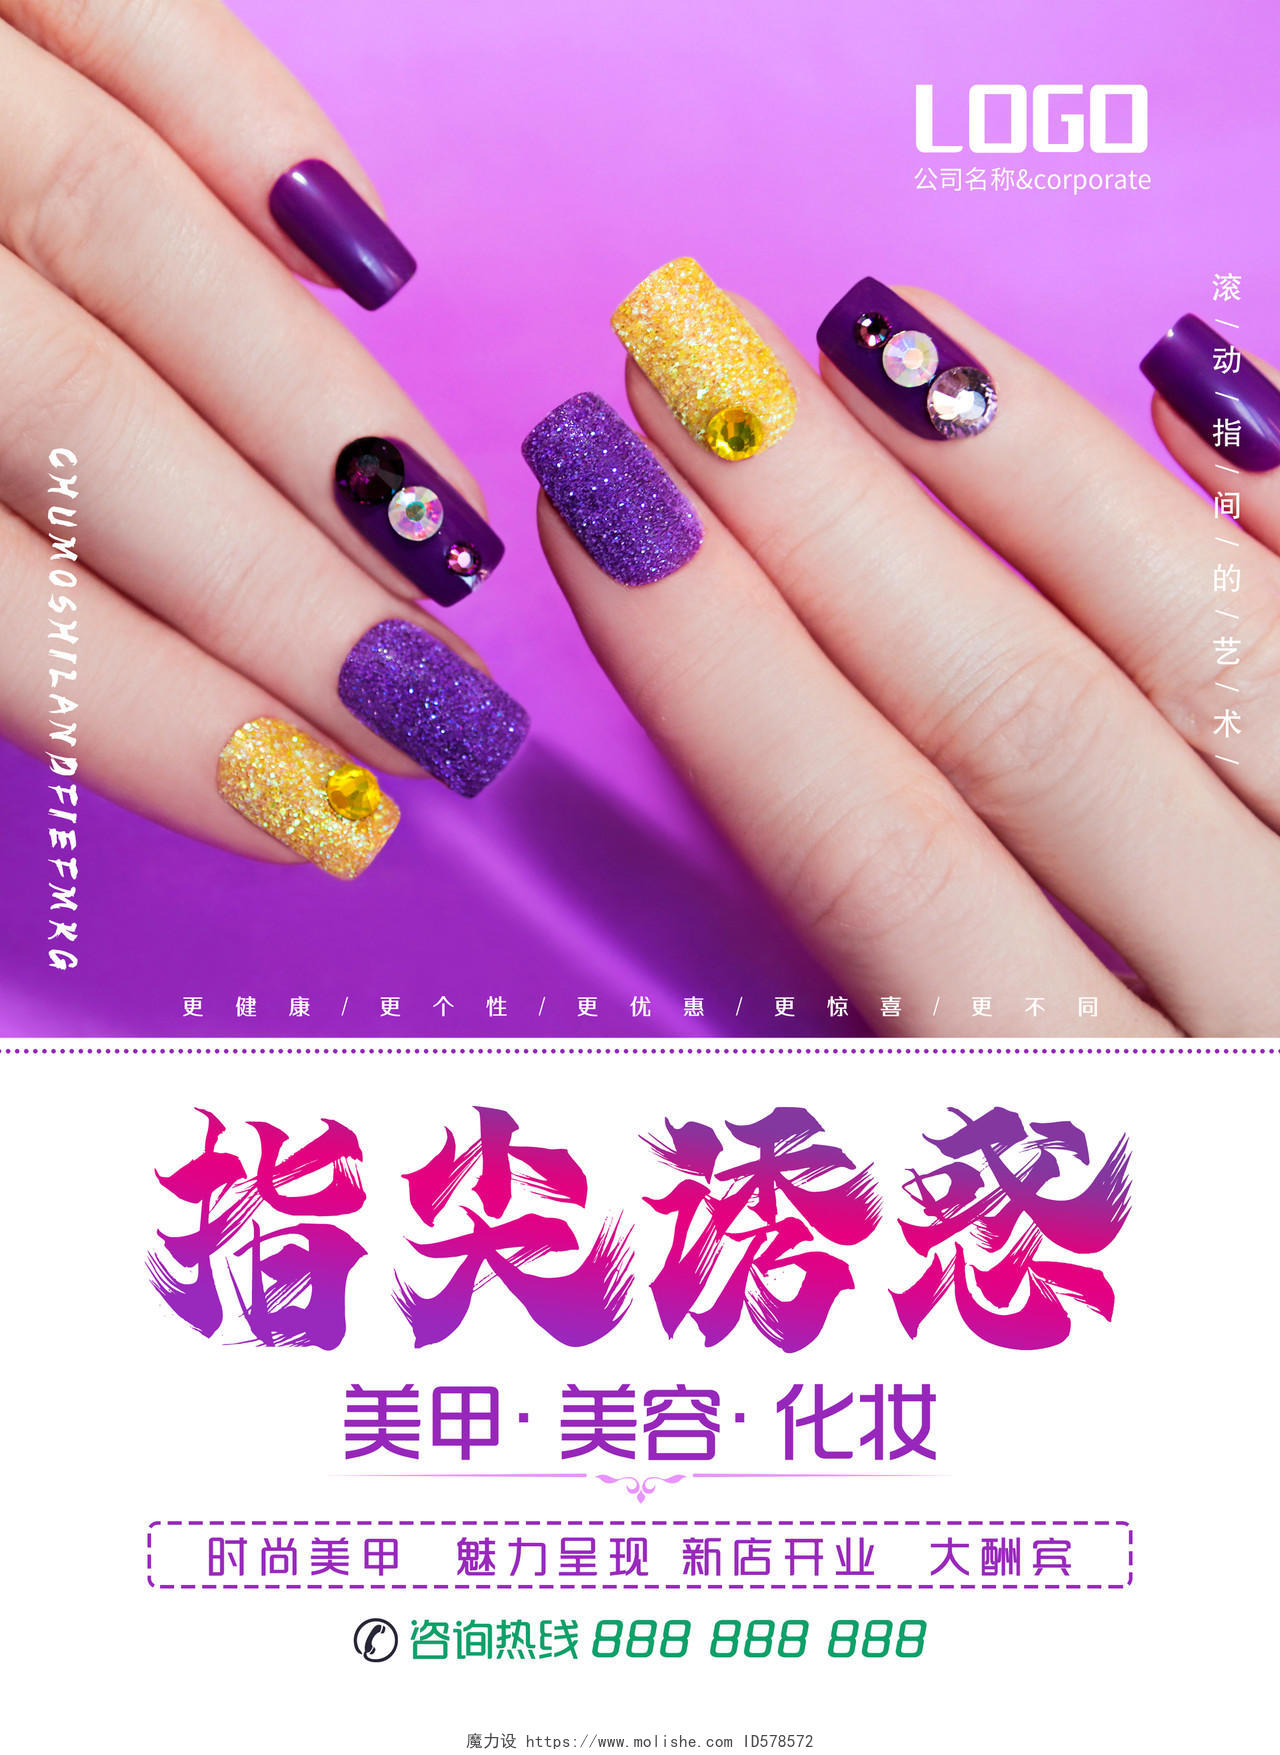 紫色风格美甲店新店开业宣传单